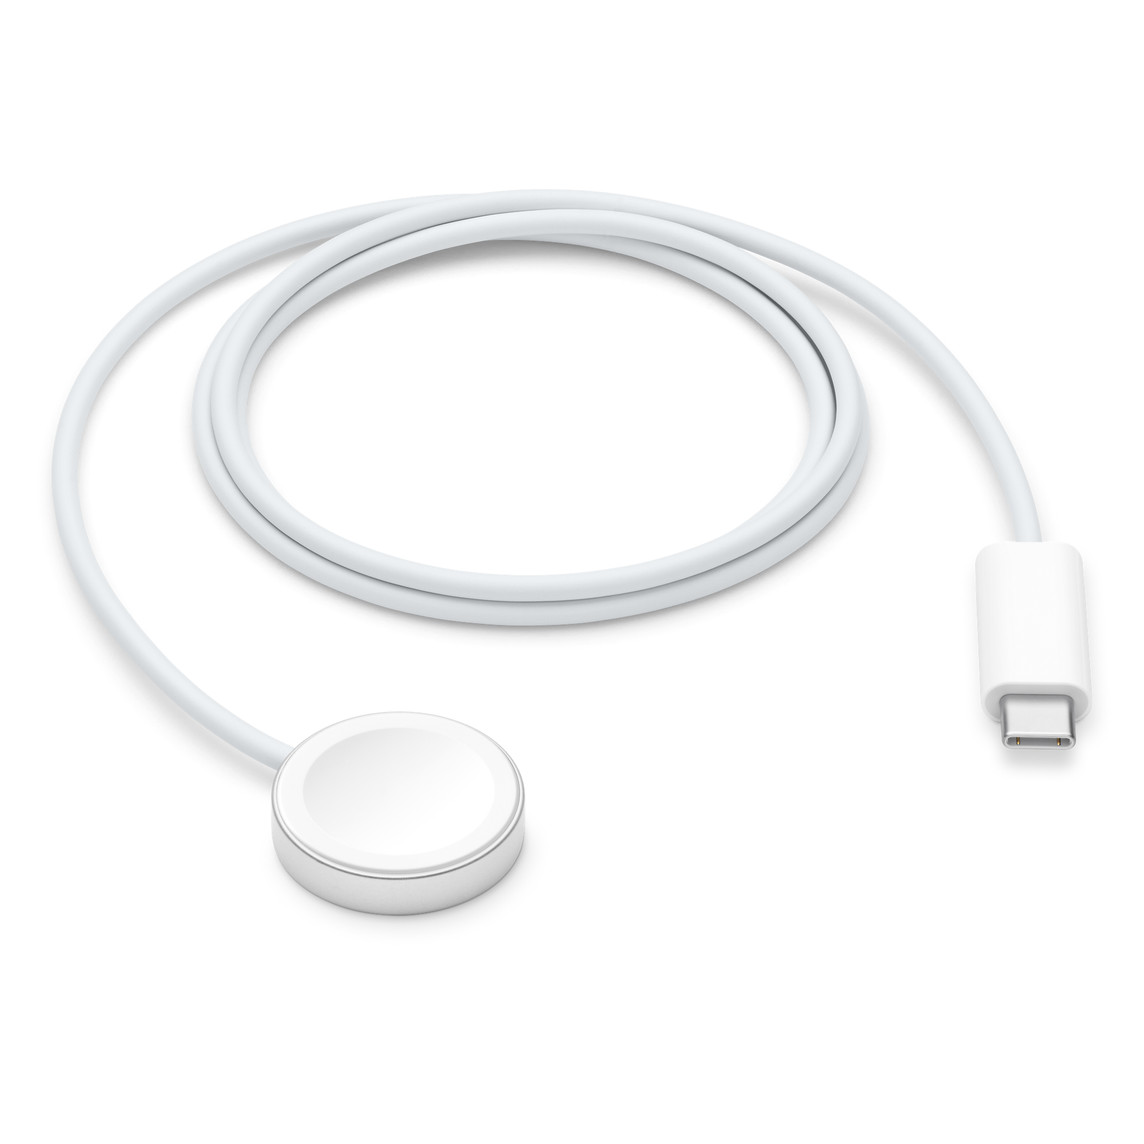 Cáp Sạc Apple Watch Magnetic Fast Charger to USB-C Cable (1 m) - Chính hãng